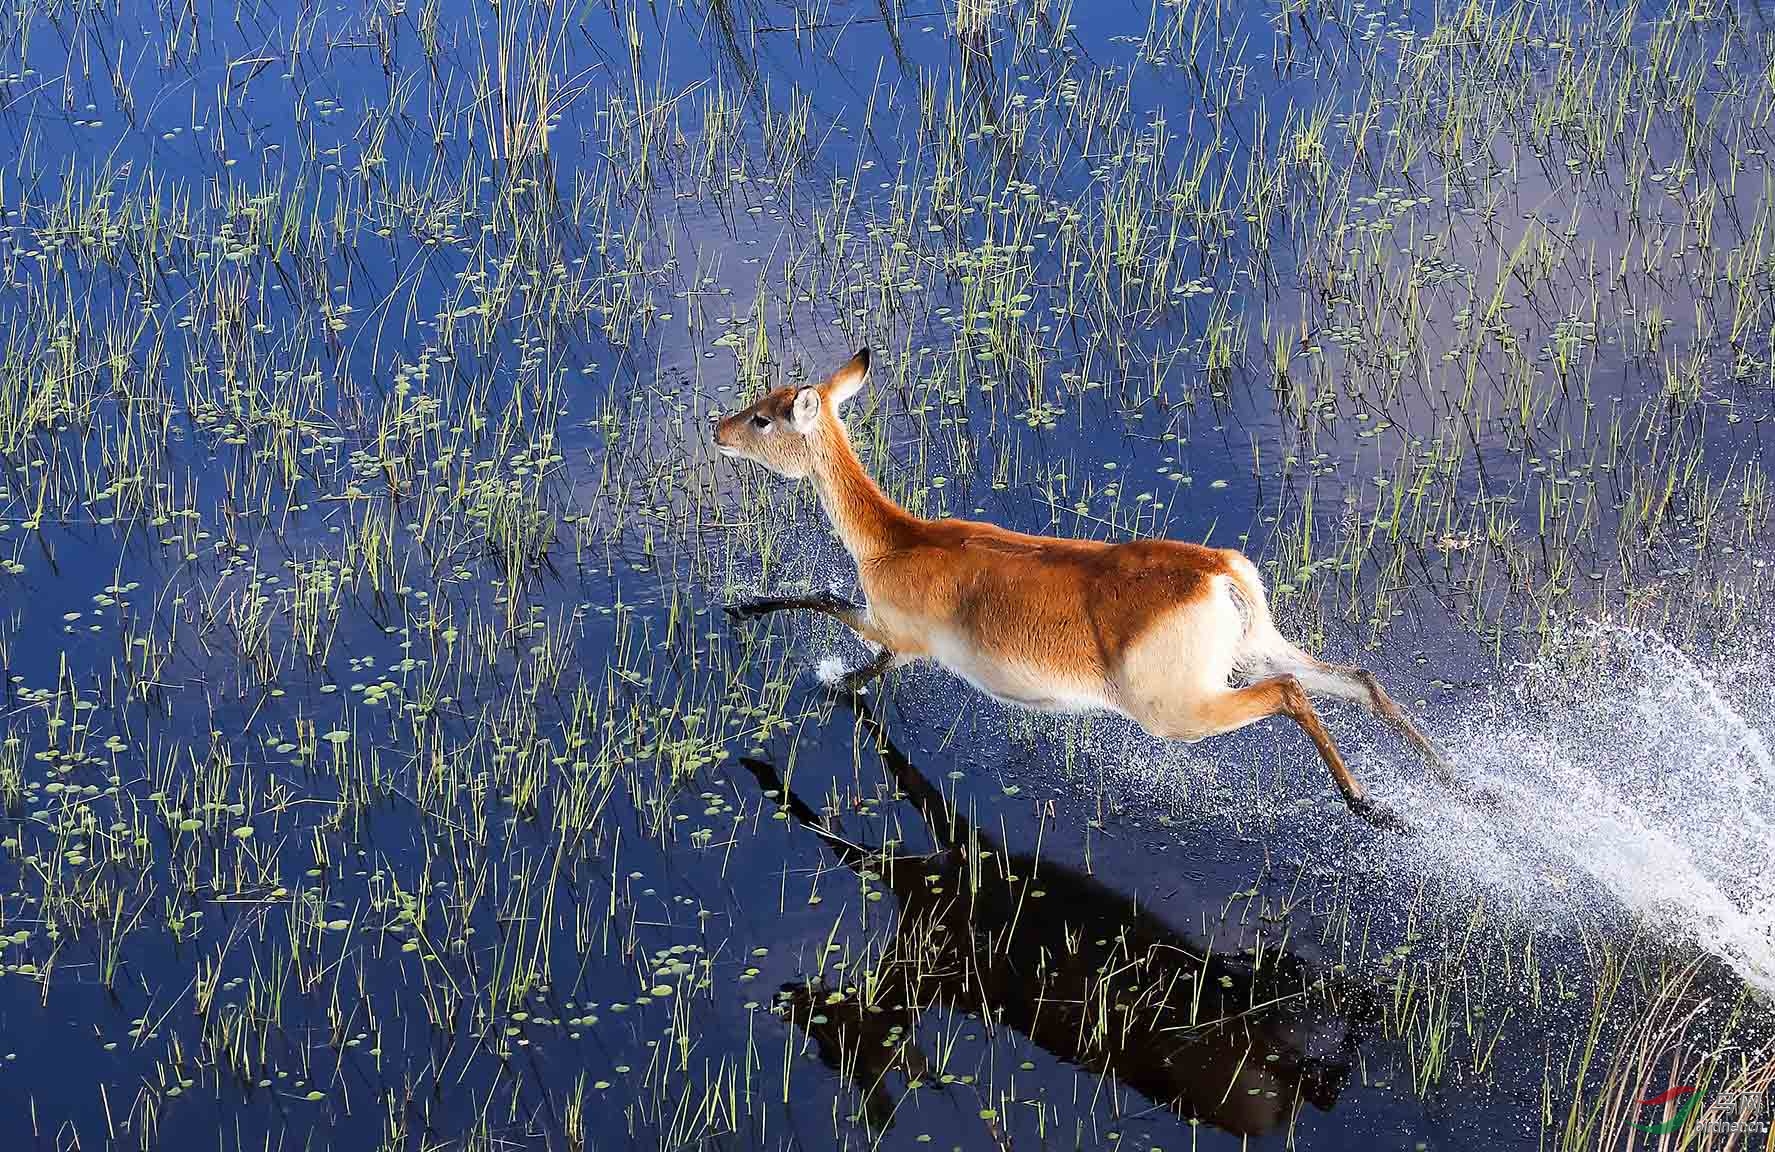 水中奔跑的赤鬣羚祝贺荣获首页动物精华